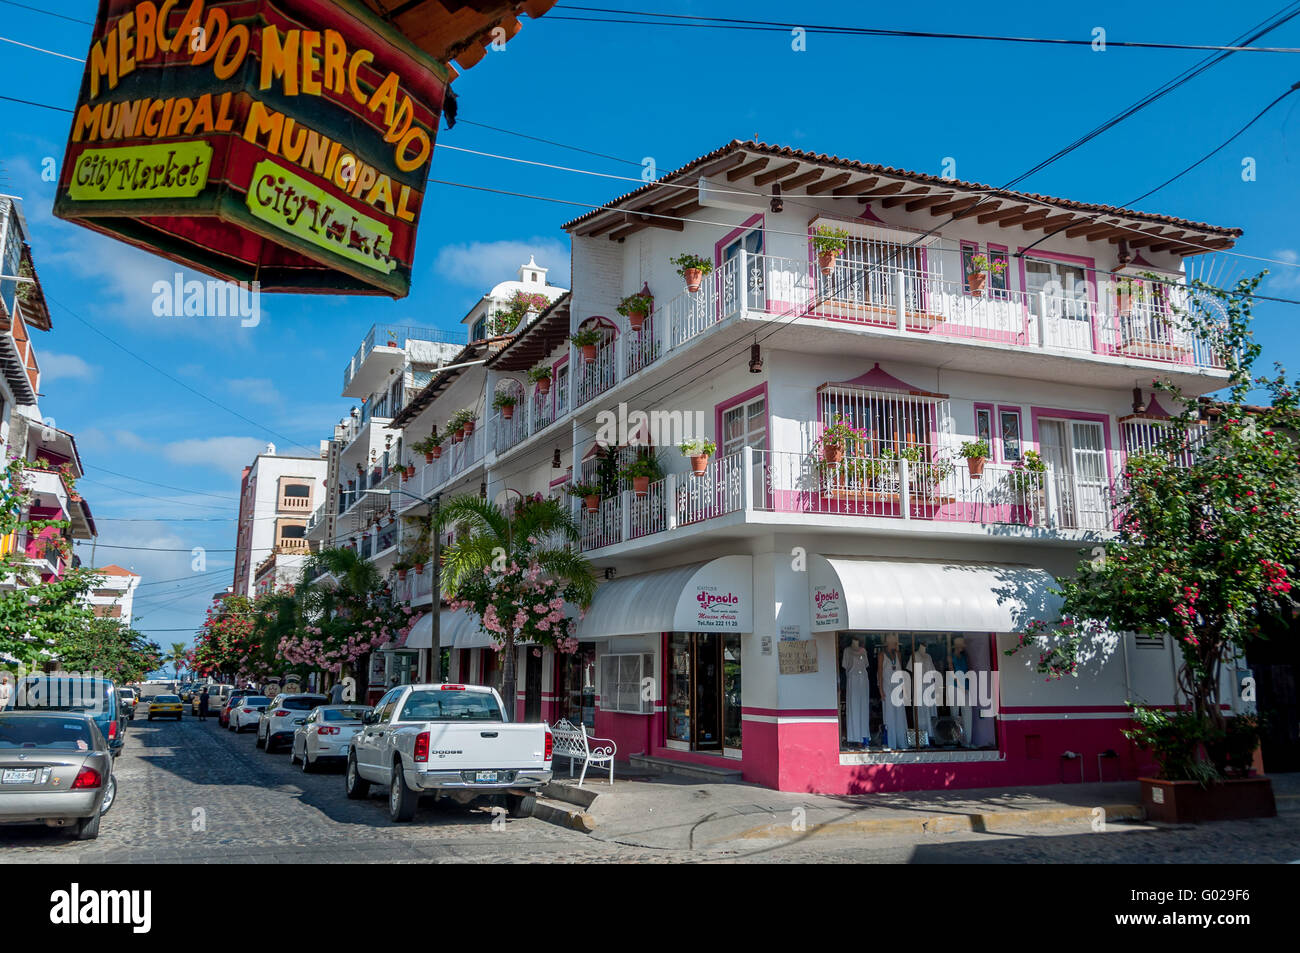 Alte Stadt romantische Zone Puerto Vallarta Straßenszene mit rosa und weißen Gebäude w/Balkon, Mercado Municipal Stadtmarkt unterzeichnen Stockfoto